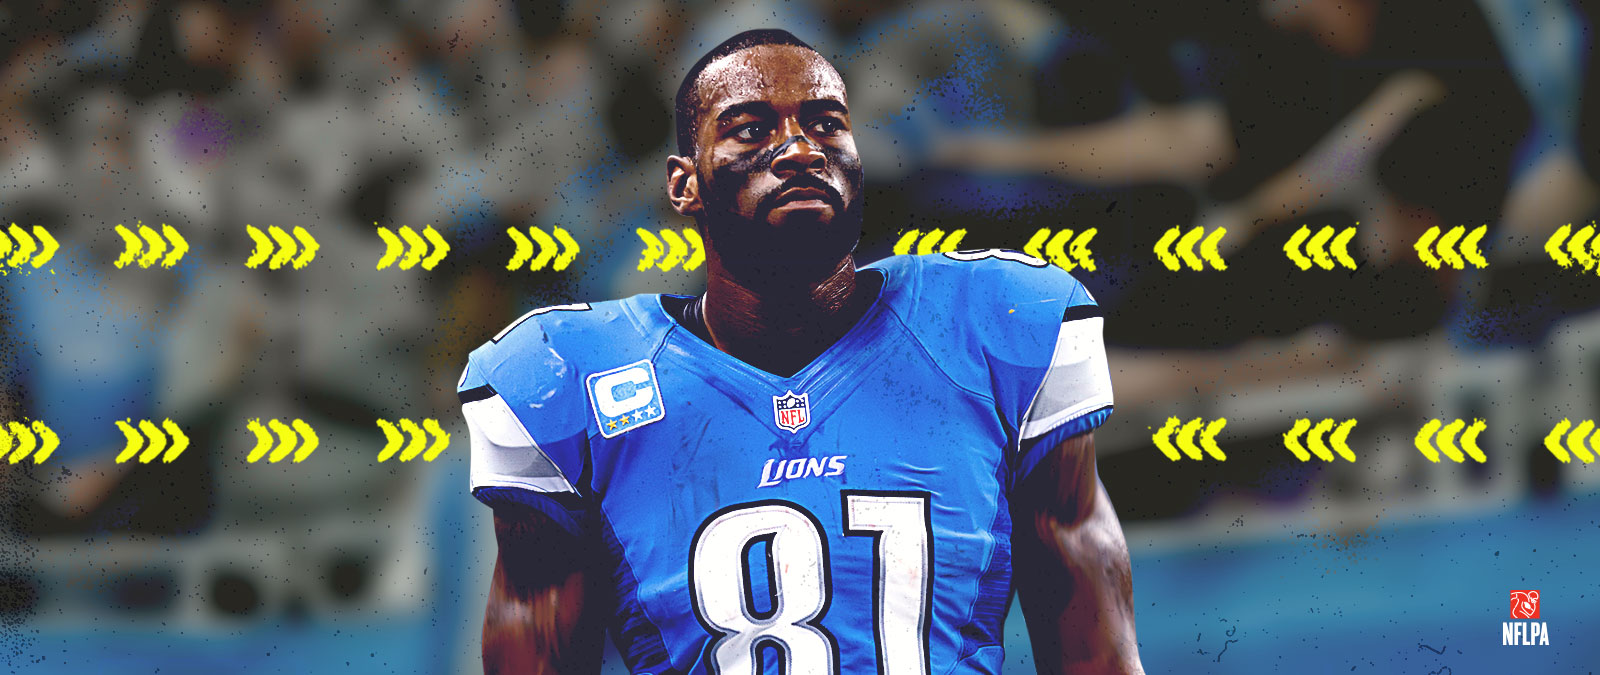 Logo NFLPA, Calvin Johnson v modrom drese tímu Lions s číslom 81 na hrudi.